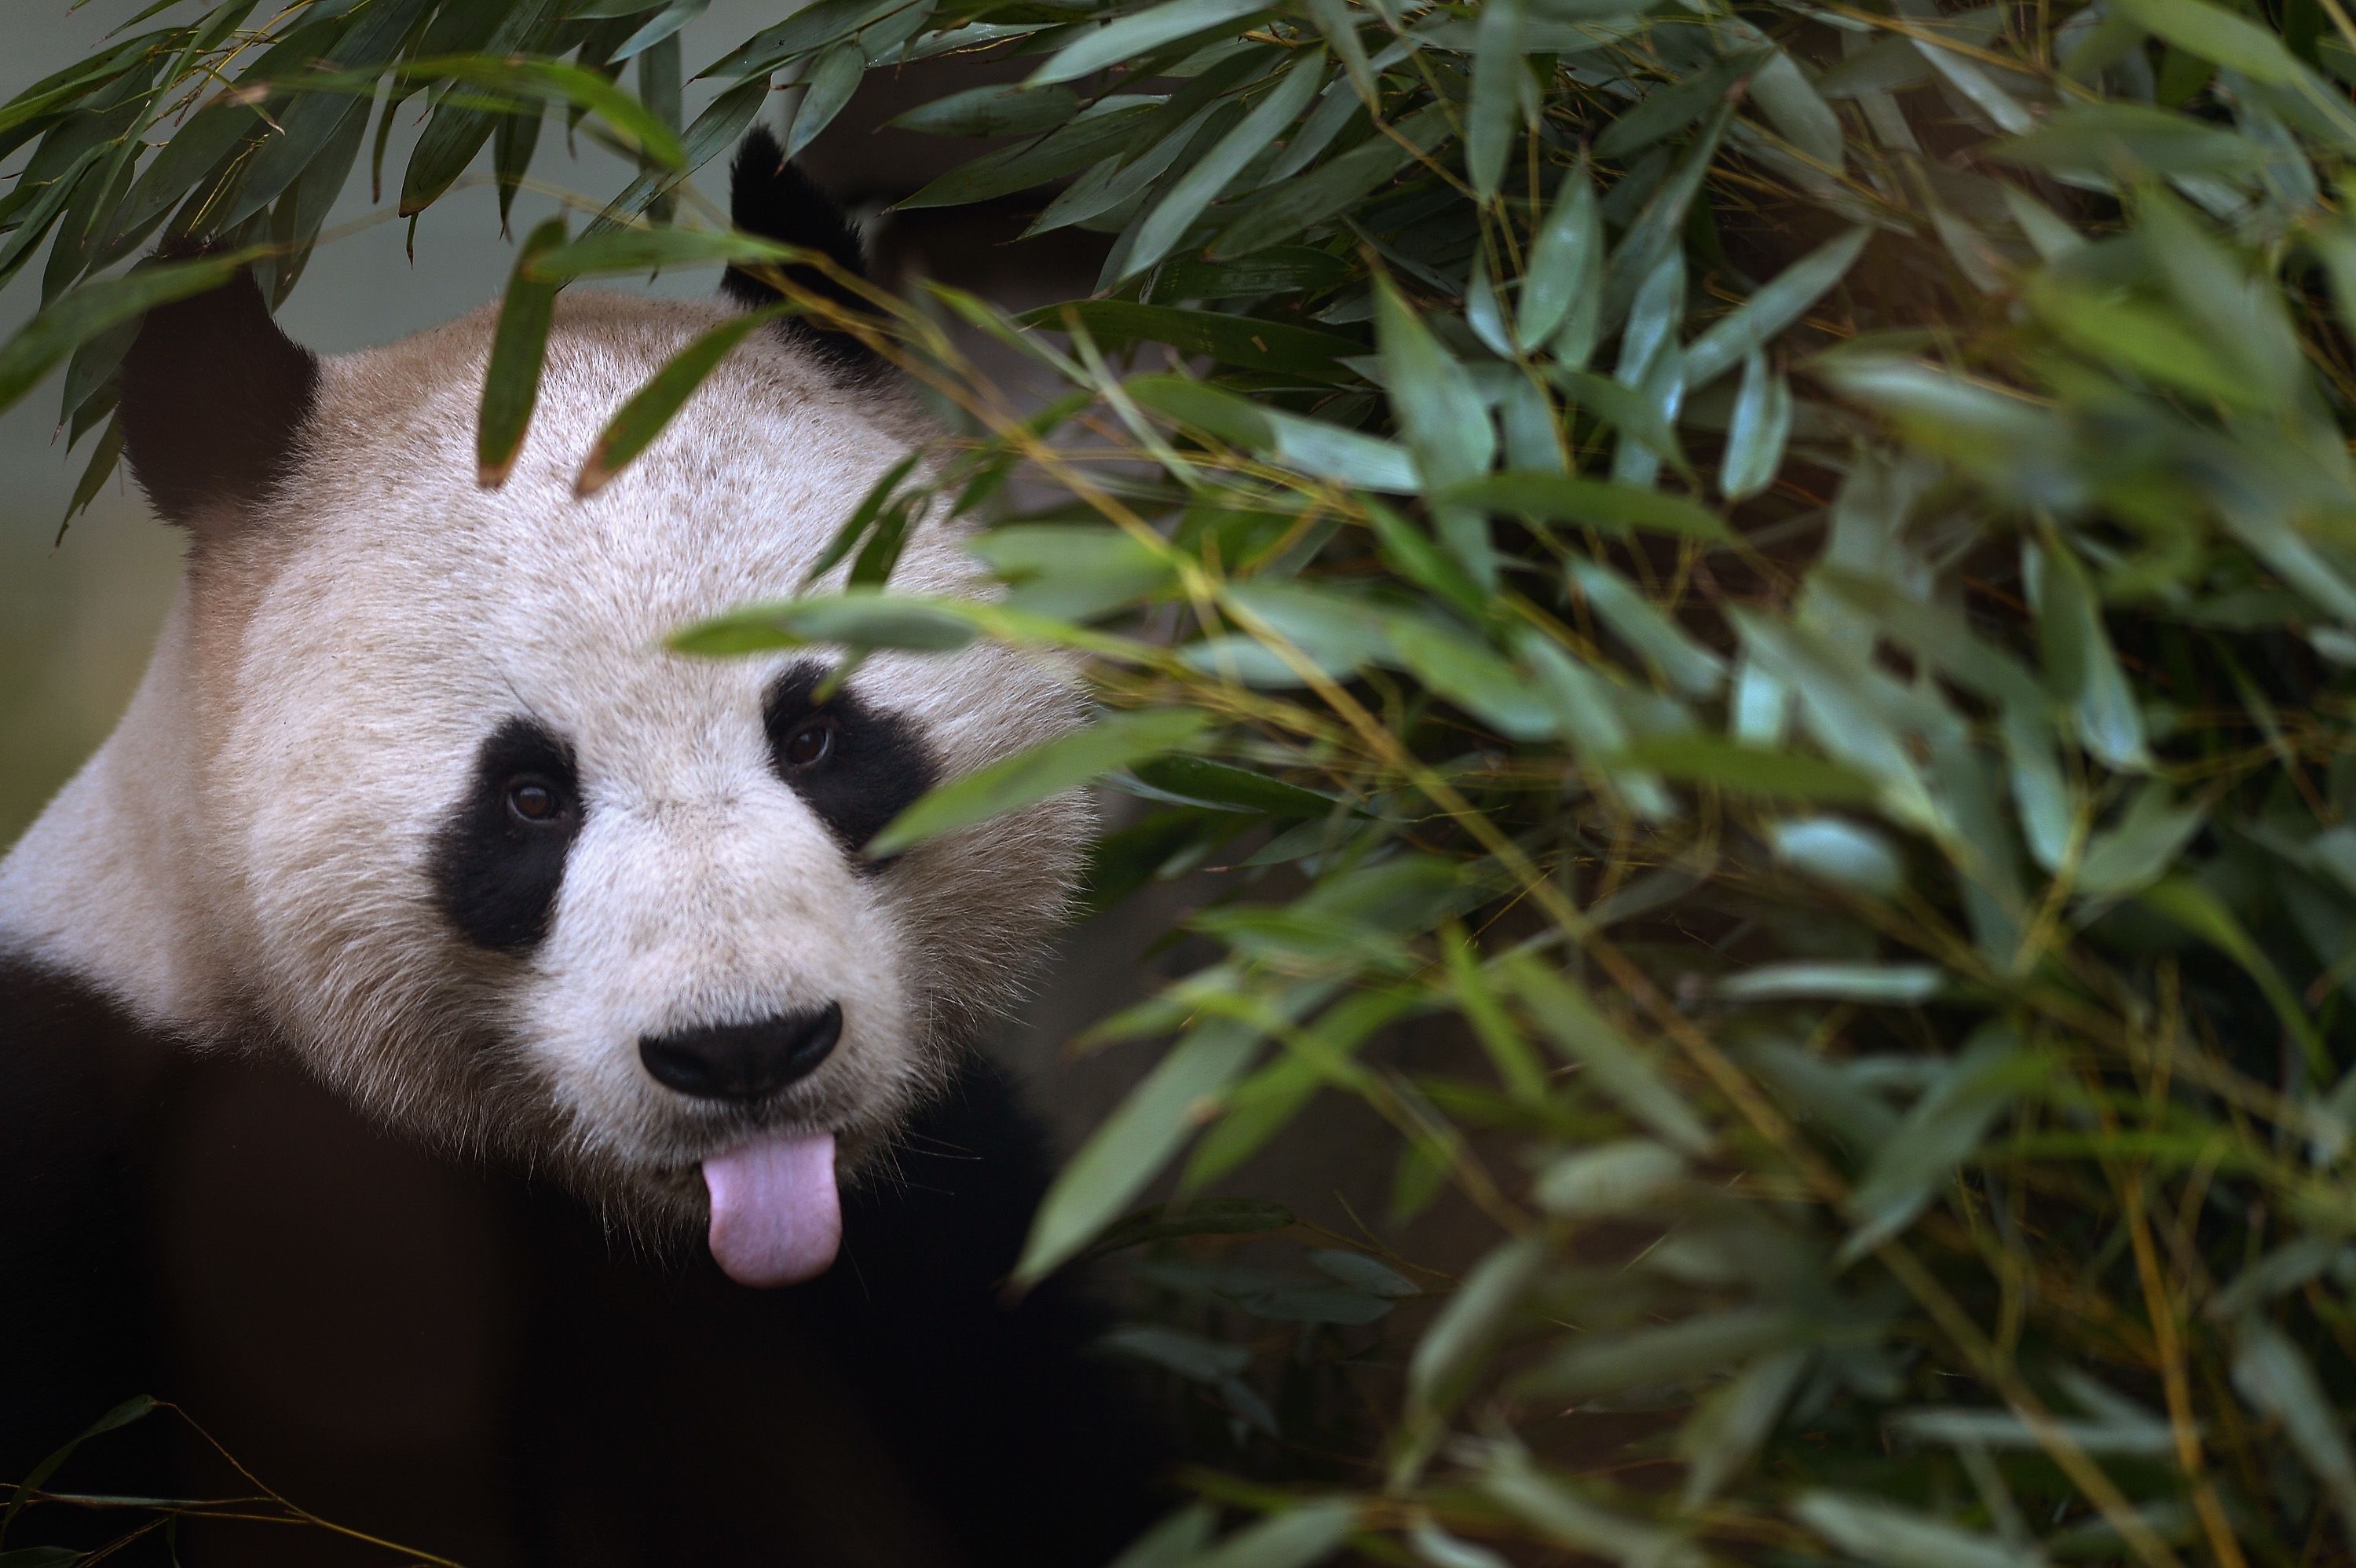 Canada zoo to return pandas to China because bamboo too hard to